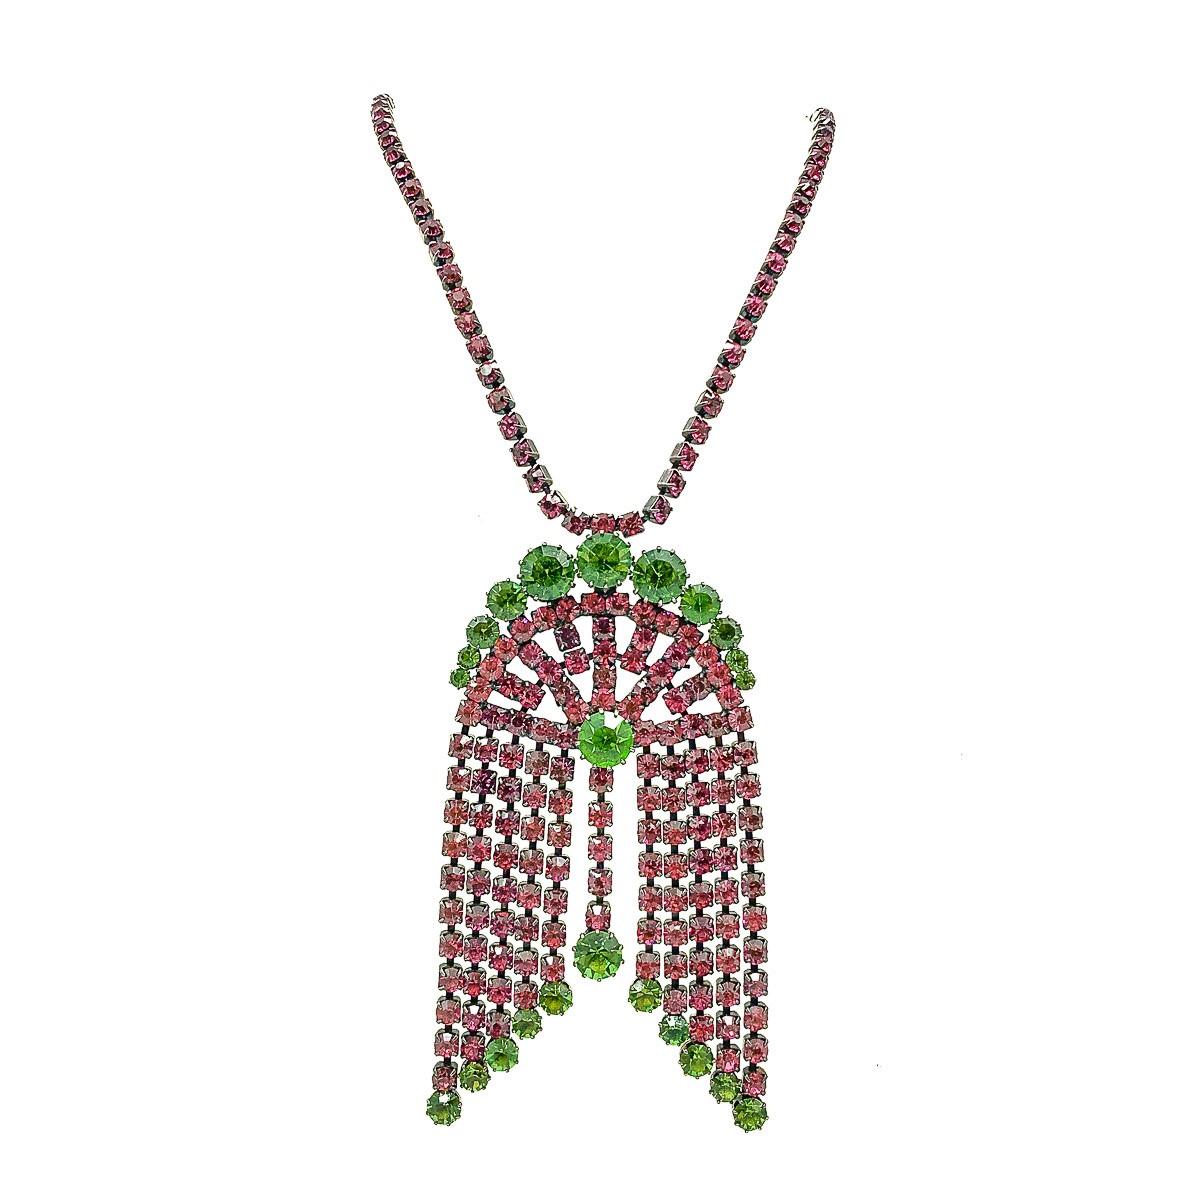 Un collier vintage à glands en cristal. Il s'agit d'une étonnante combinaison contrastée de cristaux roses et verts, chacun d'entre eux étant serti individuellement dans une pampille arquée d'inspiration Art Déco.  L'impressionnant pendentif est